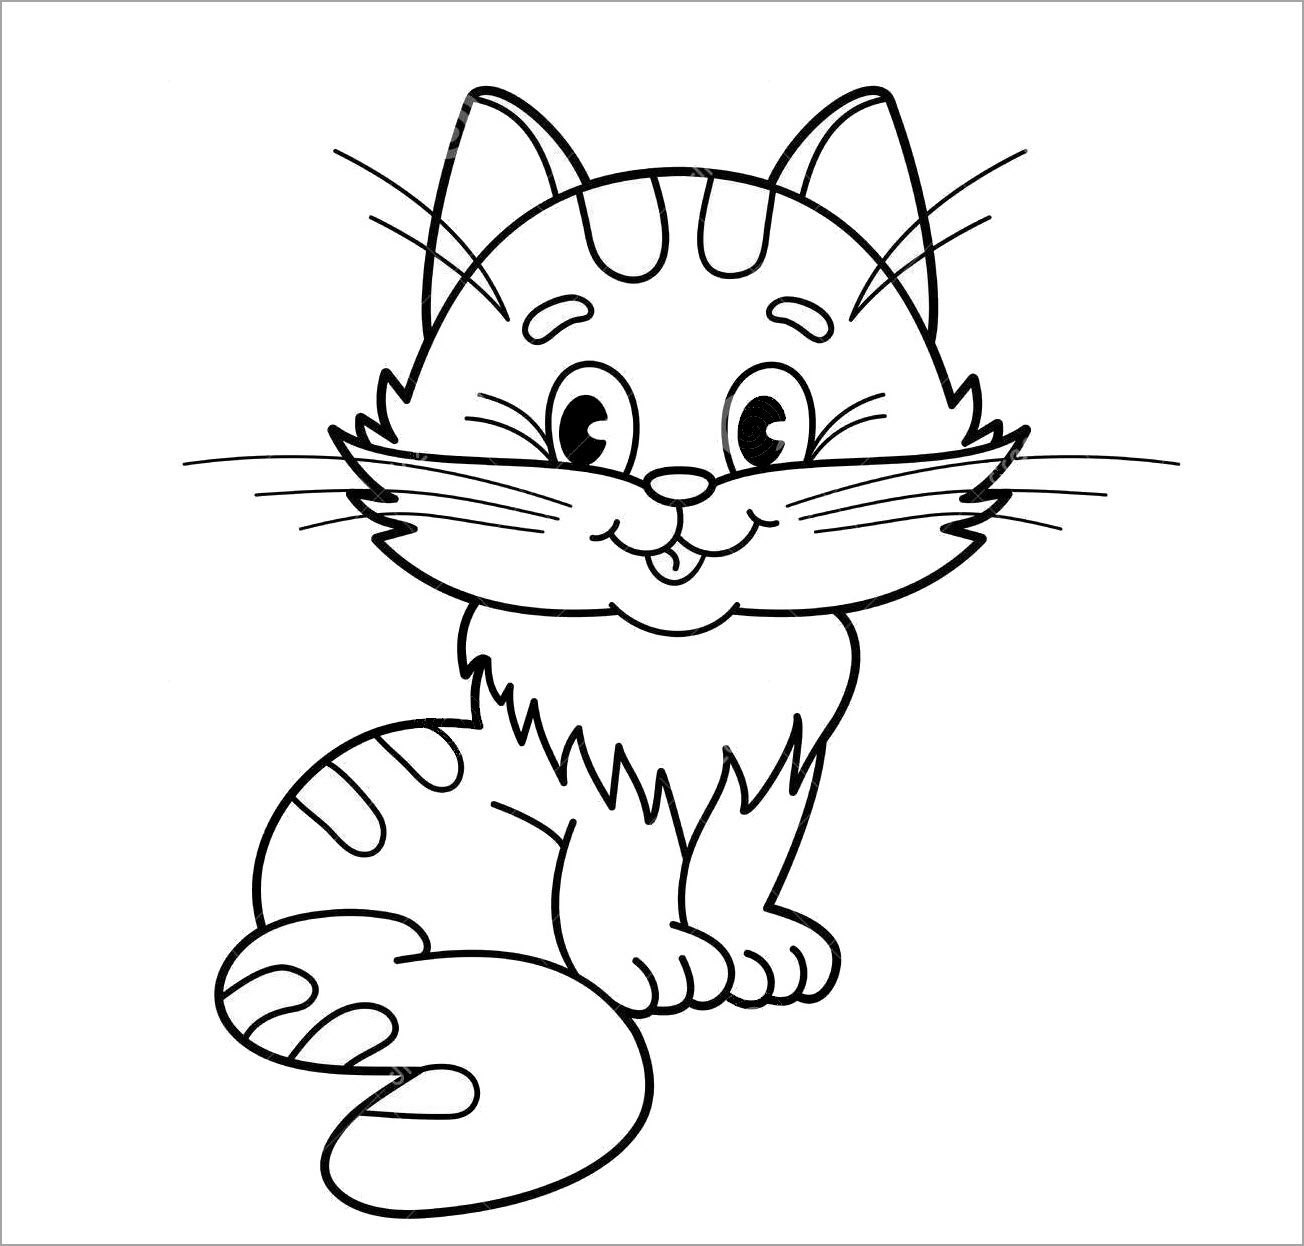 Hình ảnh Tranh Tô Màu Con Mèo Với đôi Mắt To Trên Nền Trắng Vẽ Phác Thảo  Vectơ PNG  Vẽ Hình Con Mèo Phác Thảo Hình ảnh Con Mèo Tranh Tô